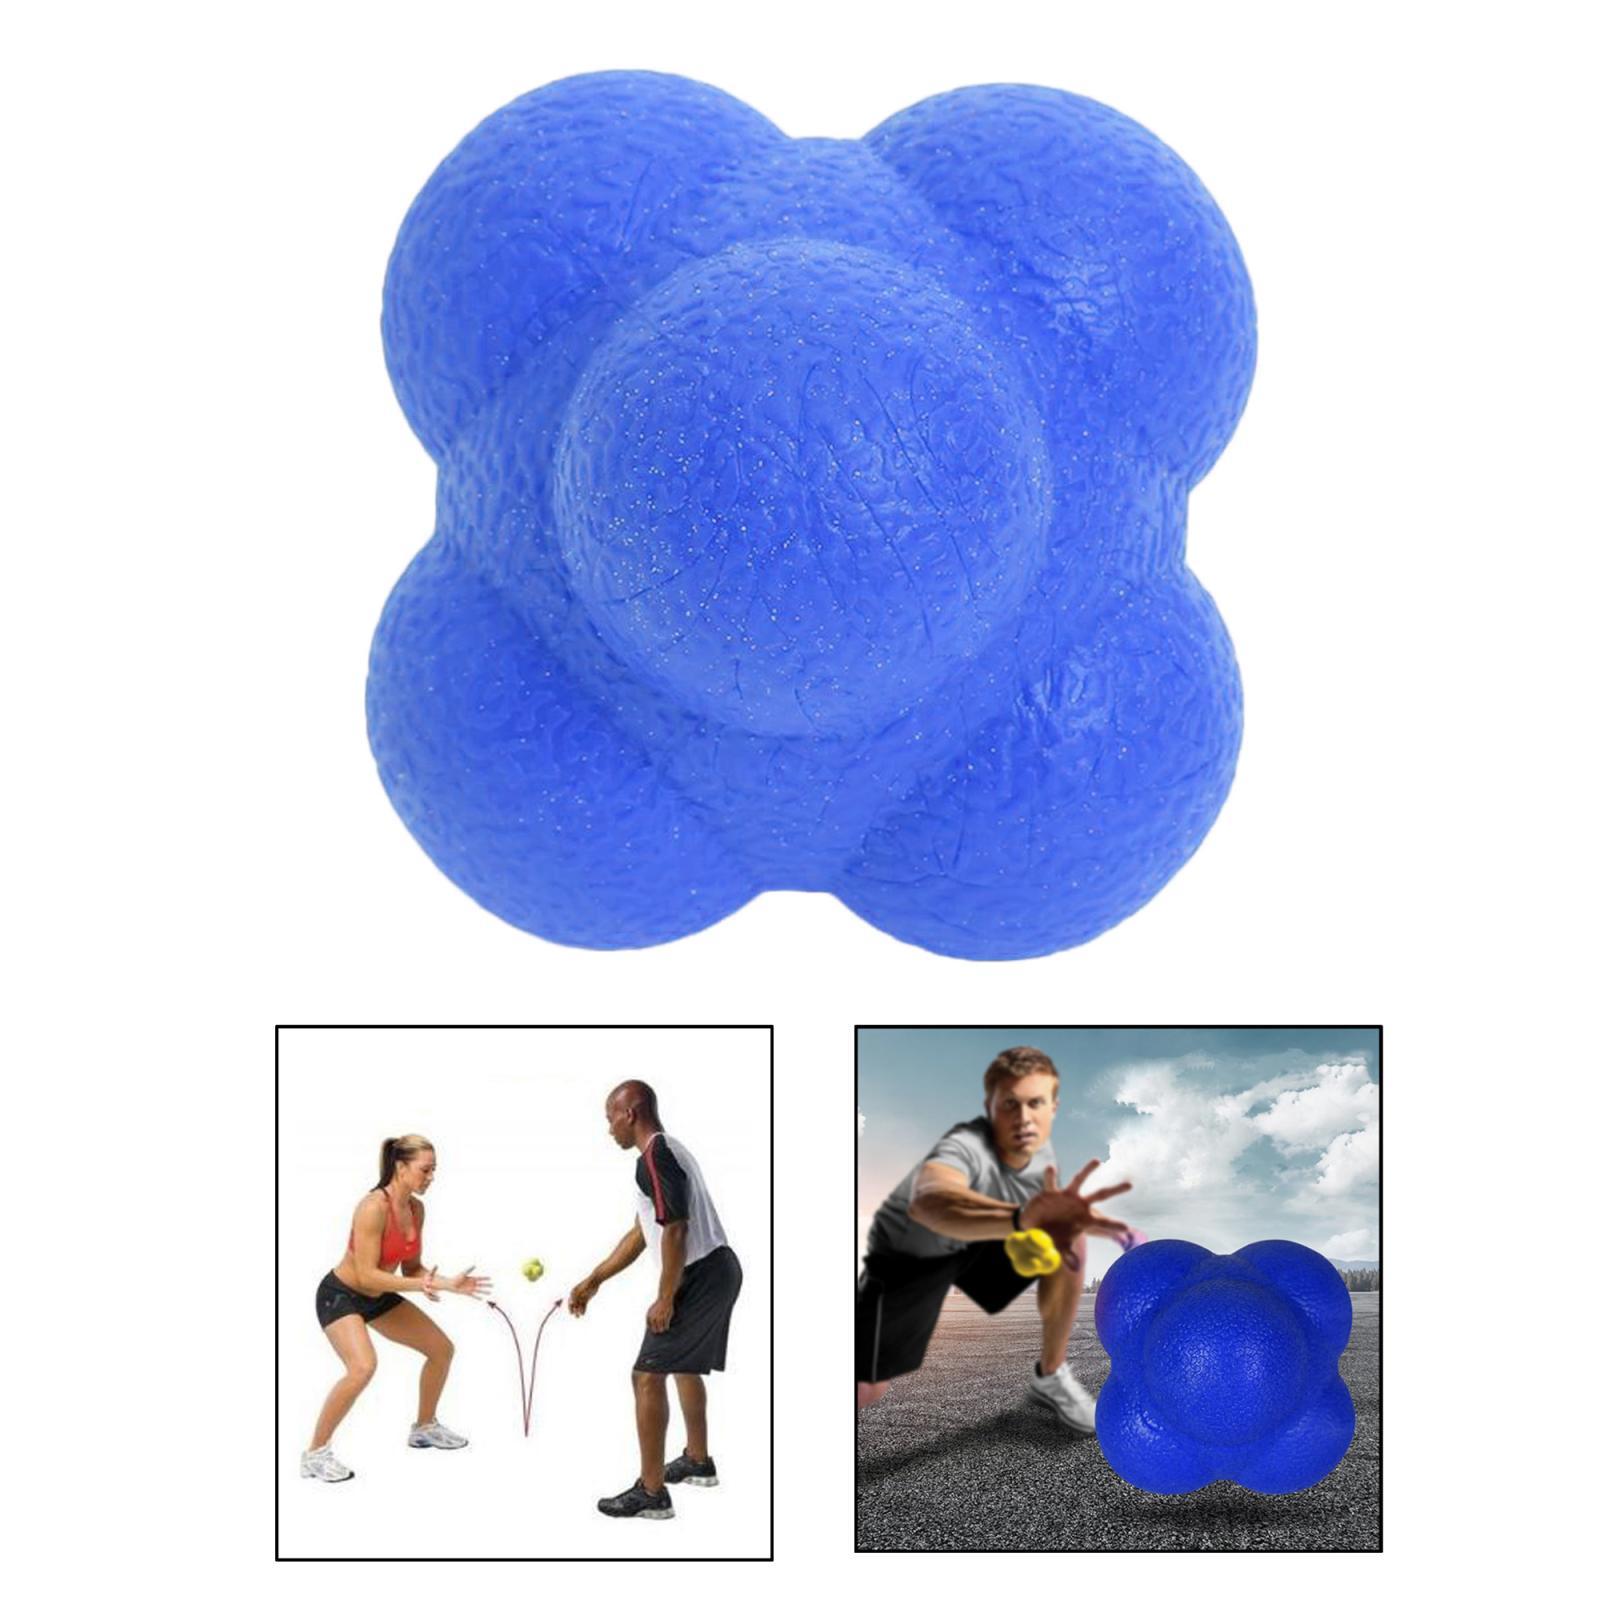 Coordination Reflex Agility Hexagonal Tennis Fitness Reaction Ball Blue